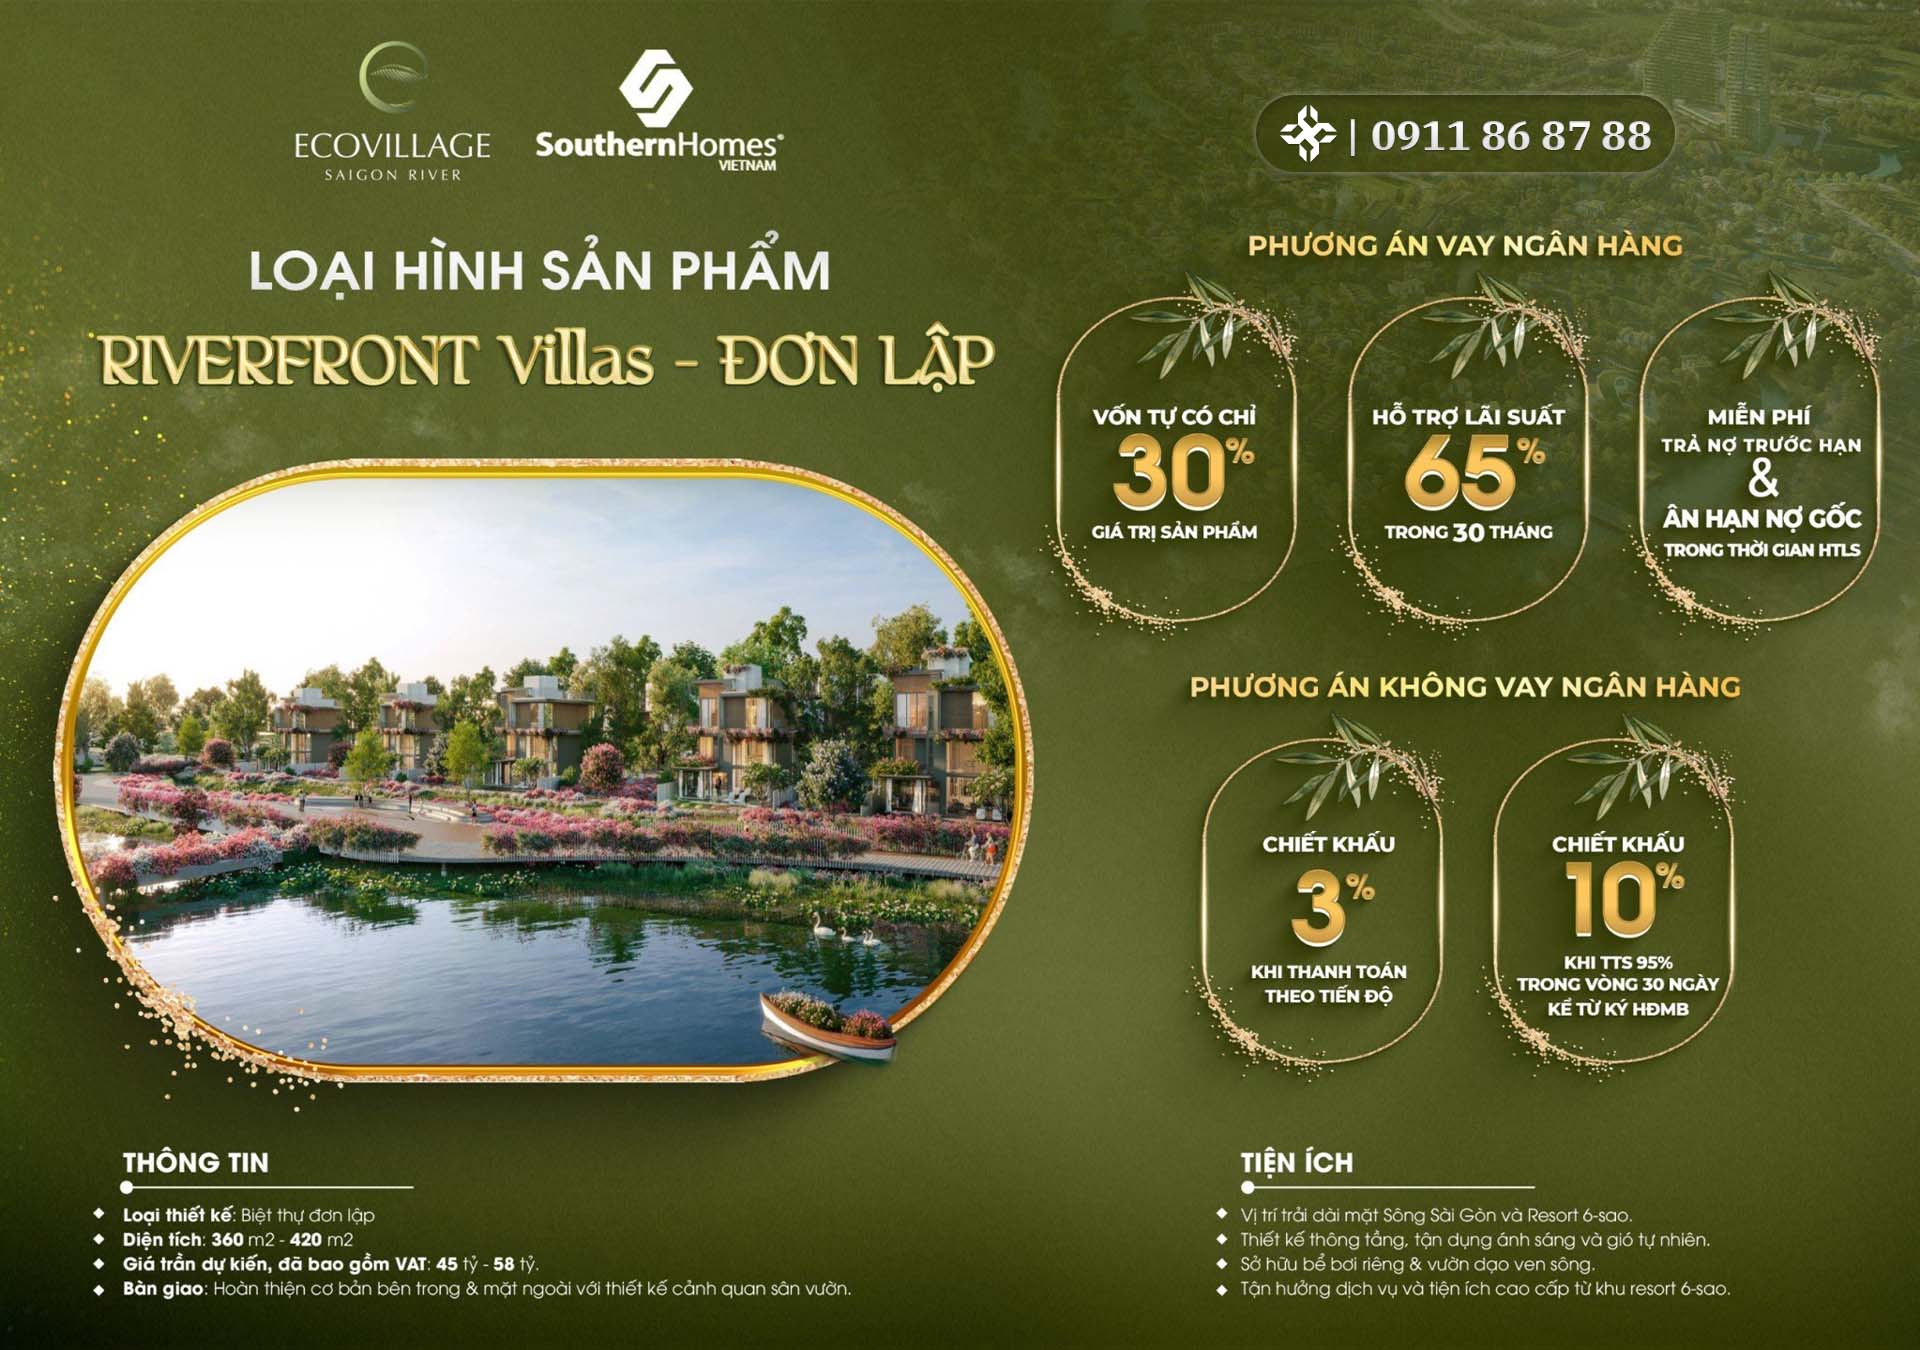 Ecovillage Saigon River mở bán nhà phố biệt thự